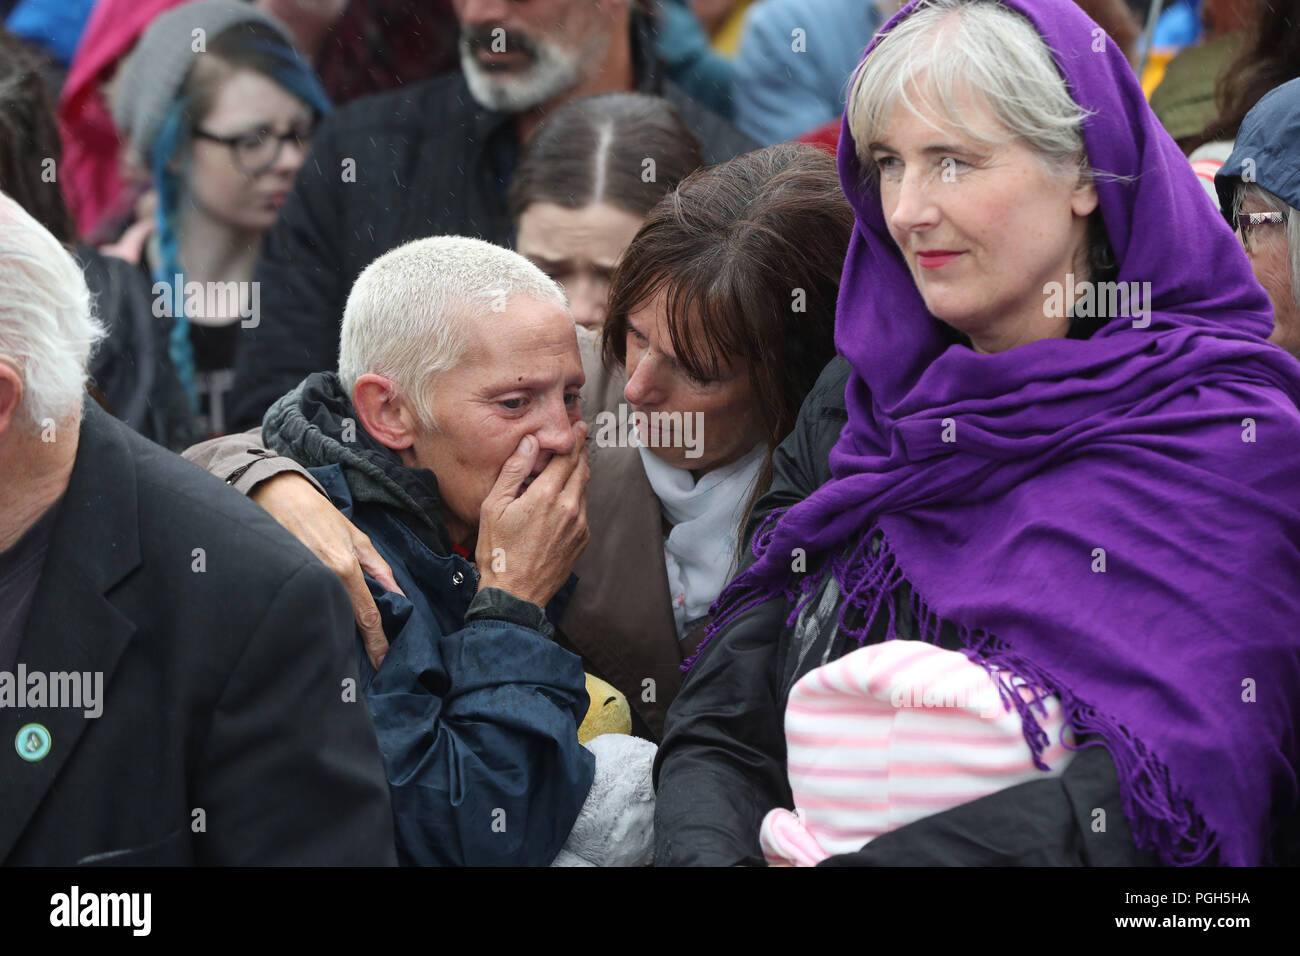 Le persone si radunano per protestare presso il sito dell'ex Tuam casa per ragazze madri nella Contea di Galway, dove una massa tomba di intorno 800 neonati è stato recentemente scoperto, durante la visita in Irlanda da Papa Francesco. Foto Stock